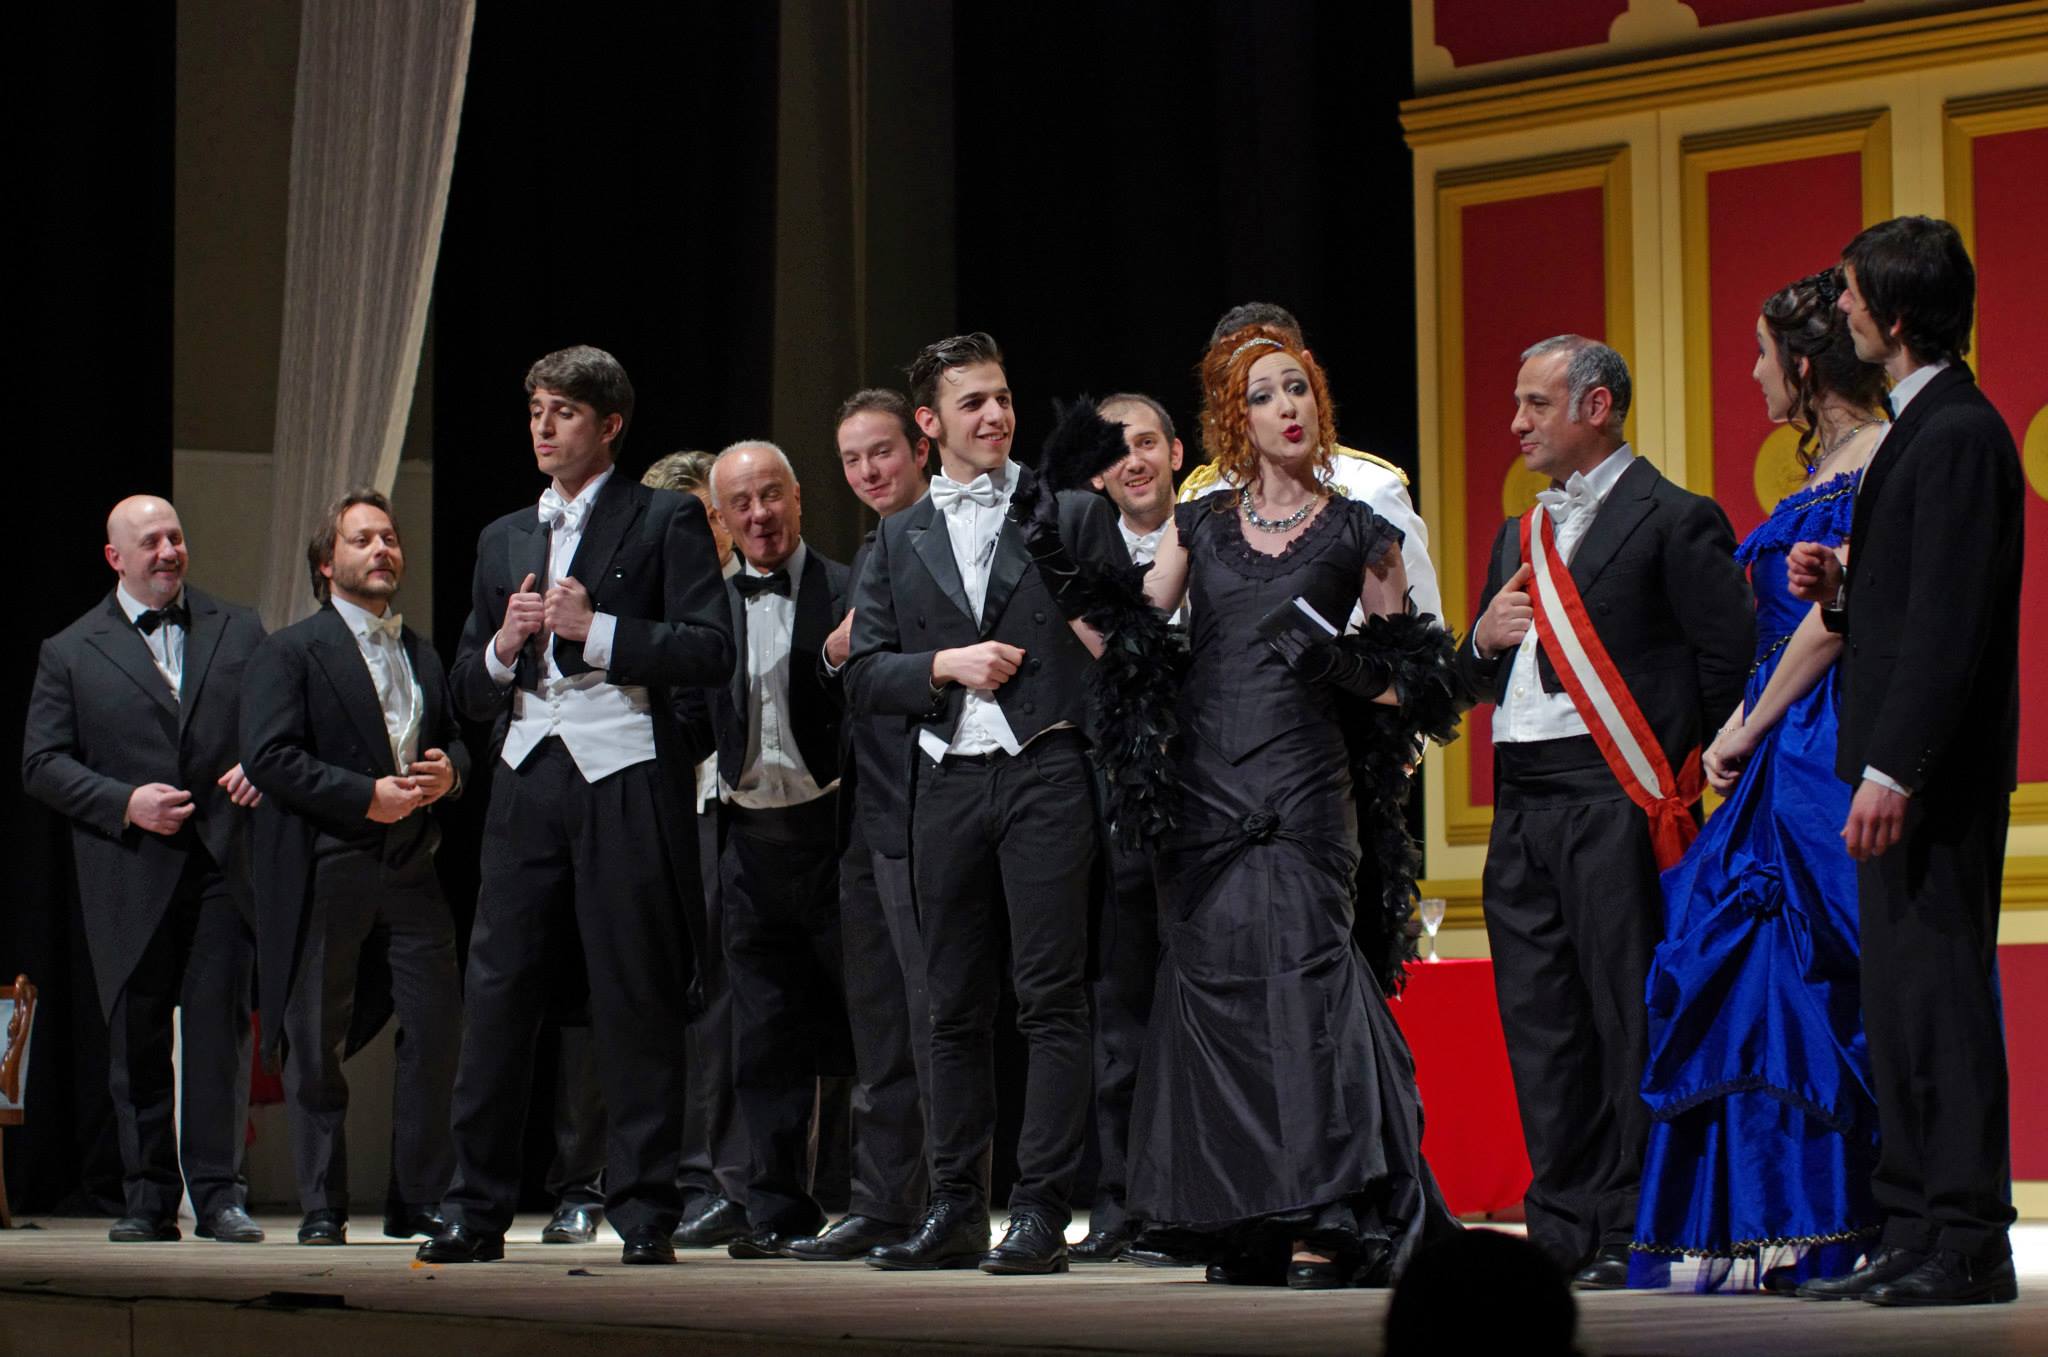 Domenica 3 aprile “La vedova allegra” al Teatro Don Bosco Crocetta di Torino